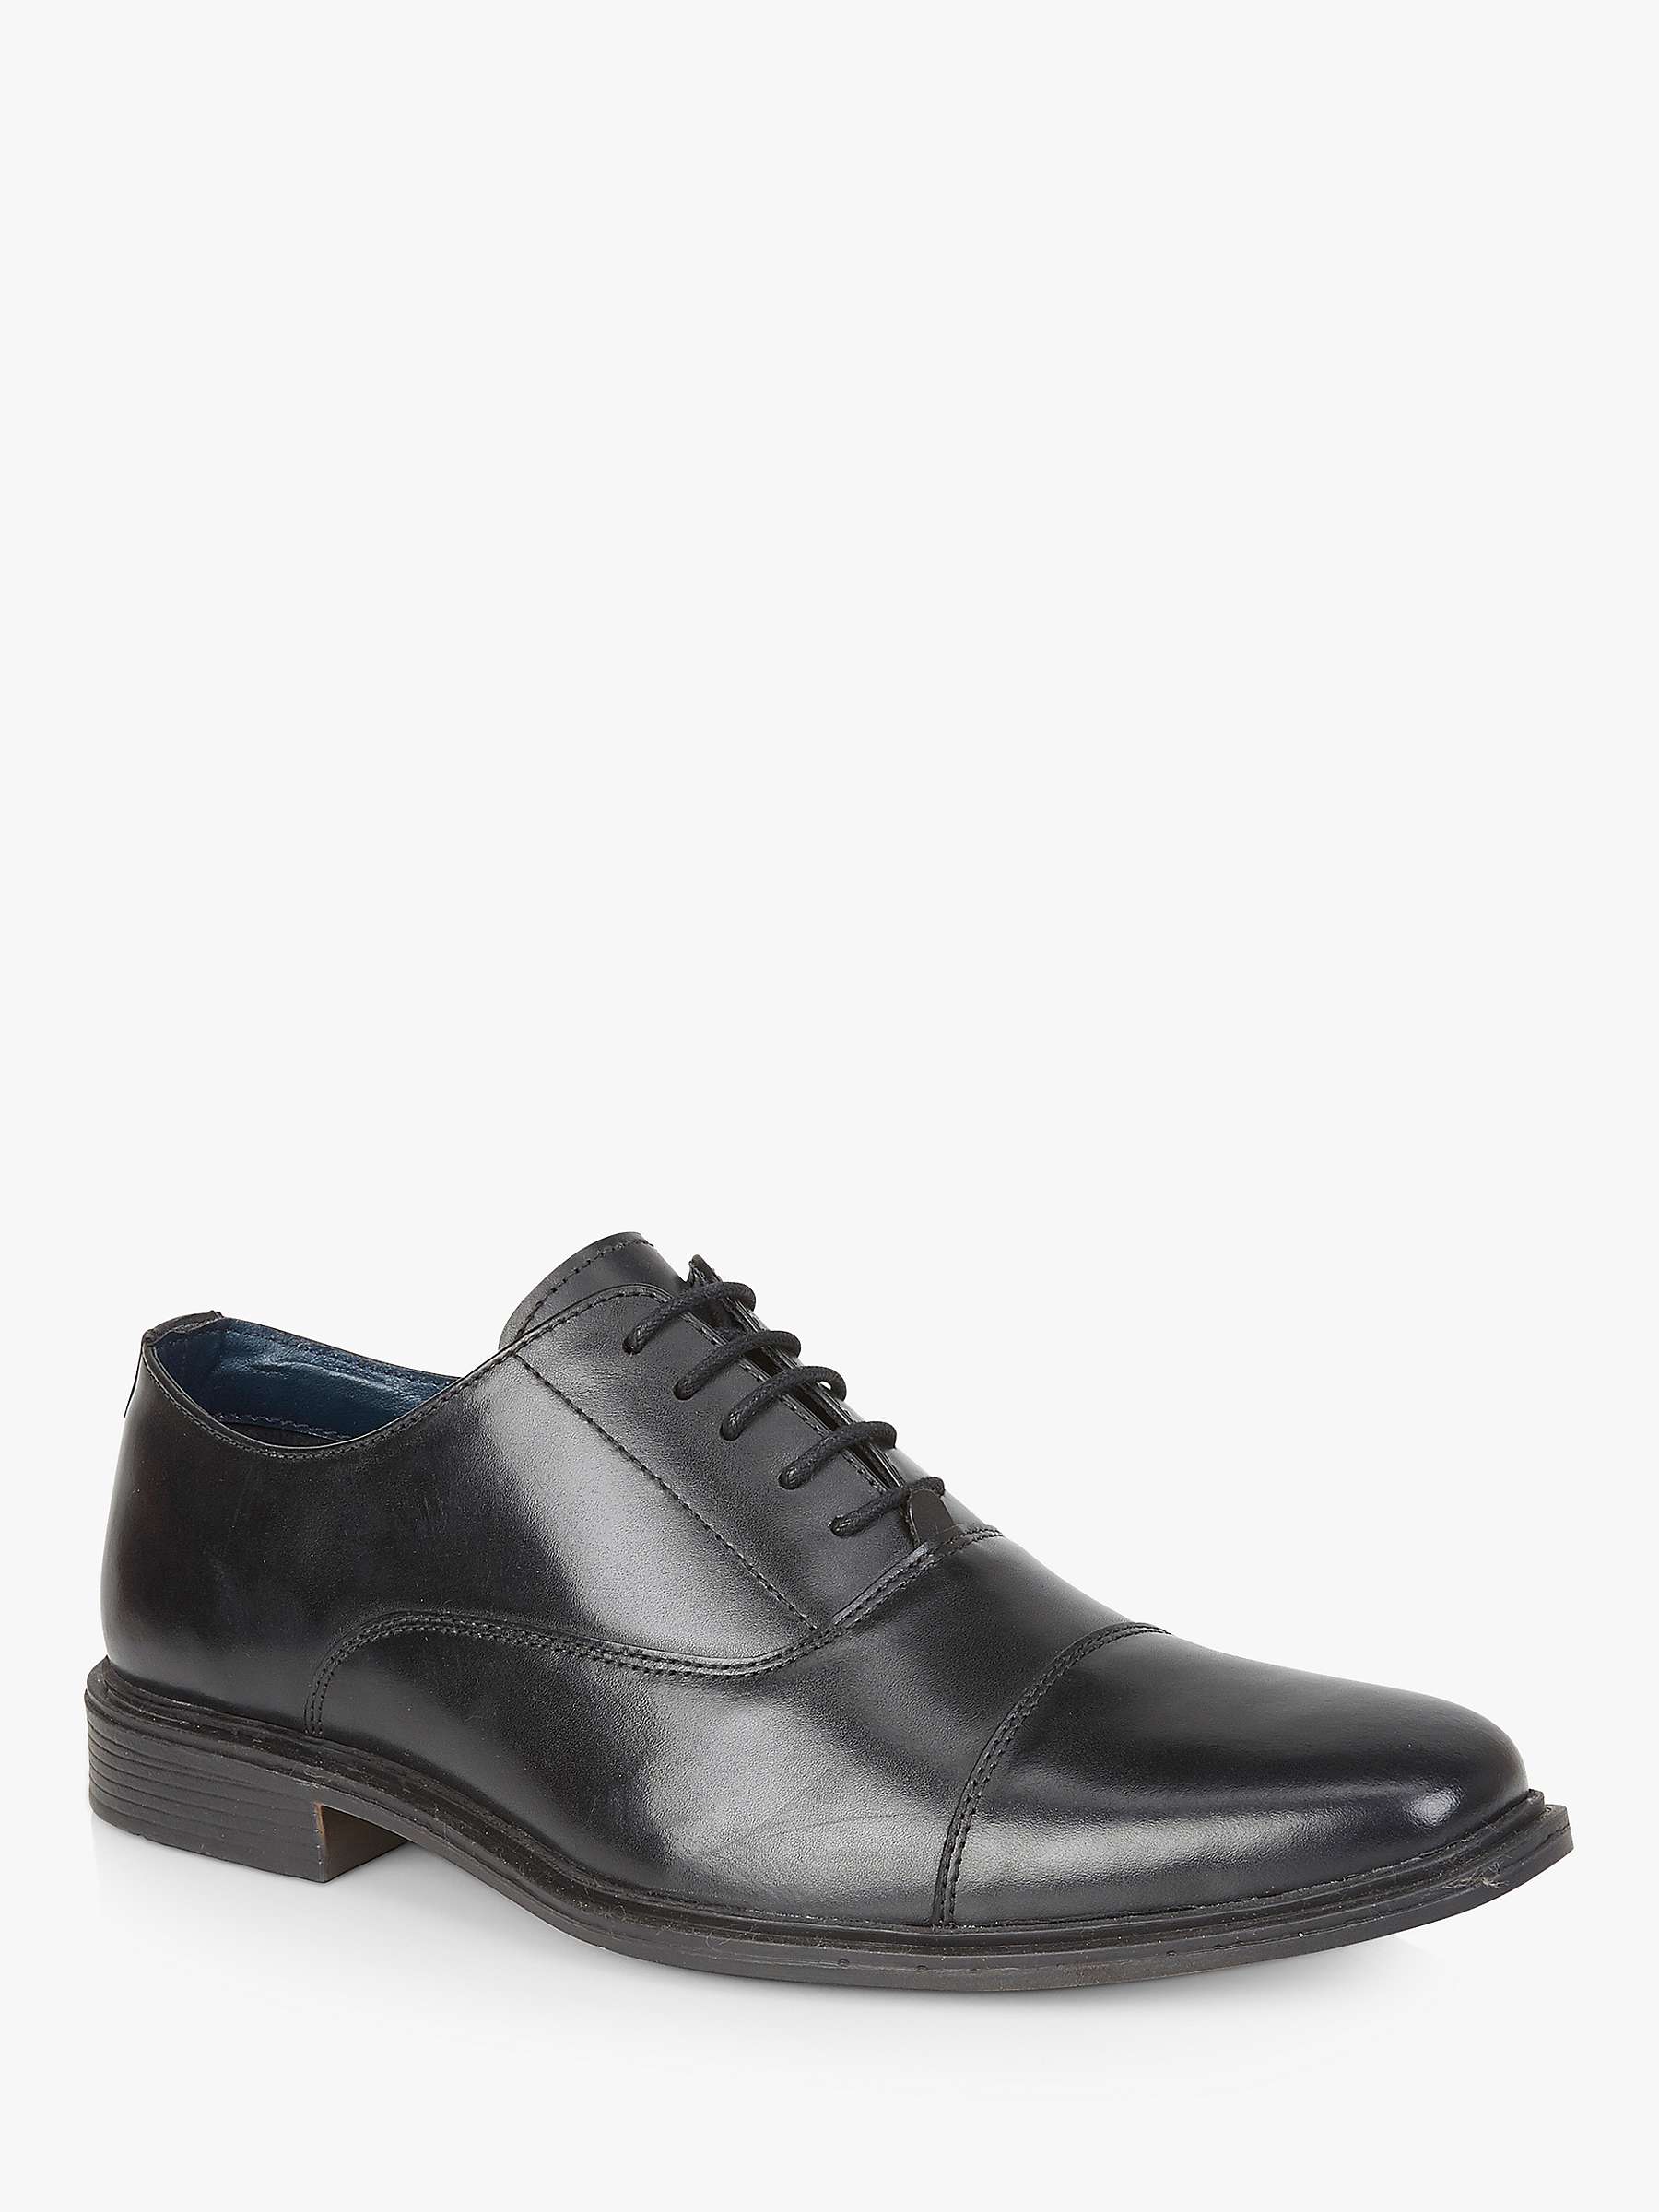 Buy Silver Street London Burford Formal Derby Shoes, Black Online at johnlewis.com